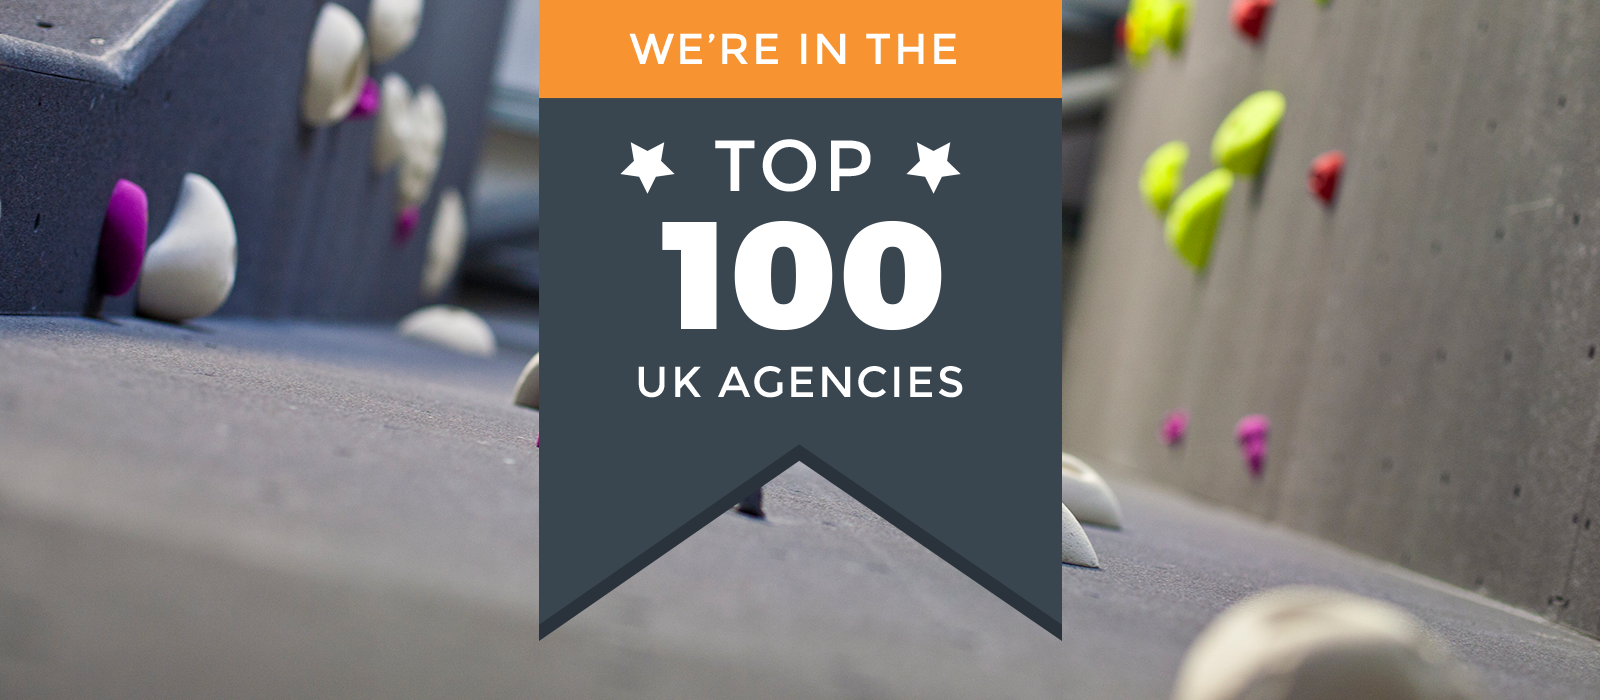 Top-100-agencies-20178(1)